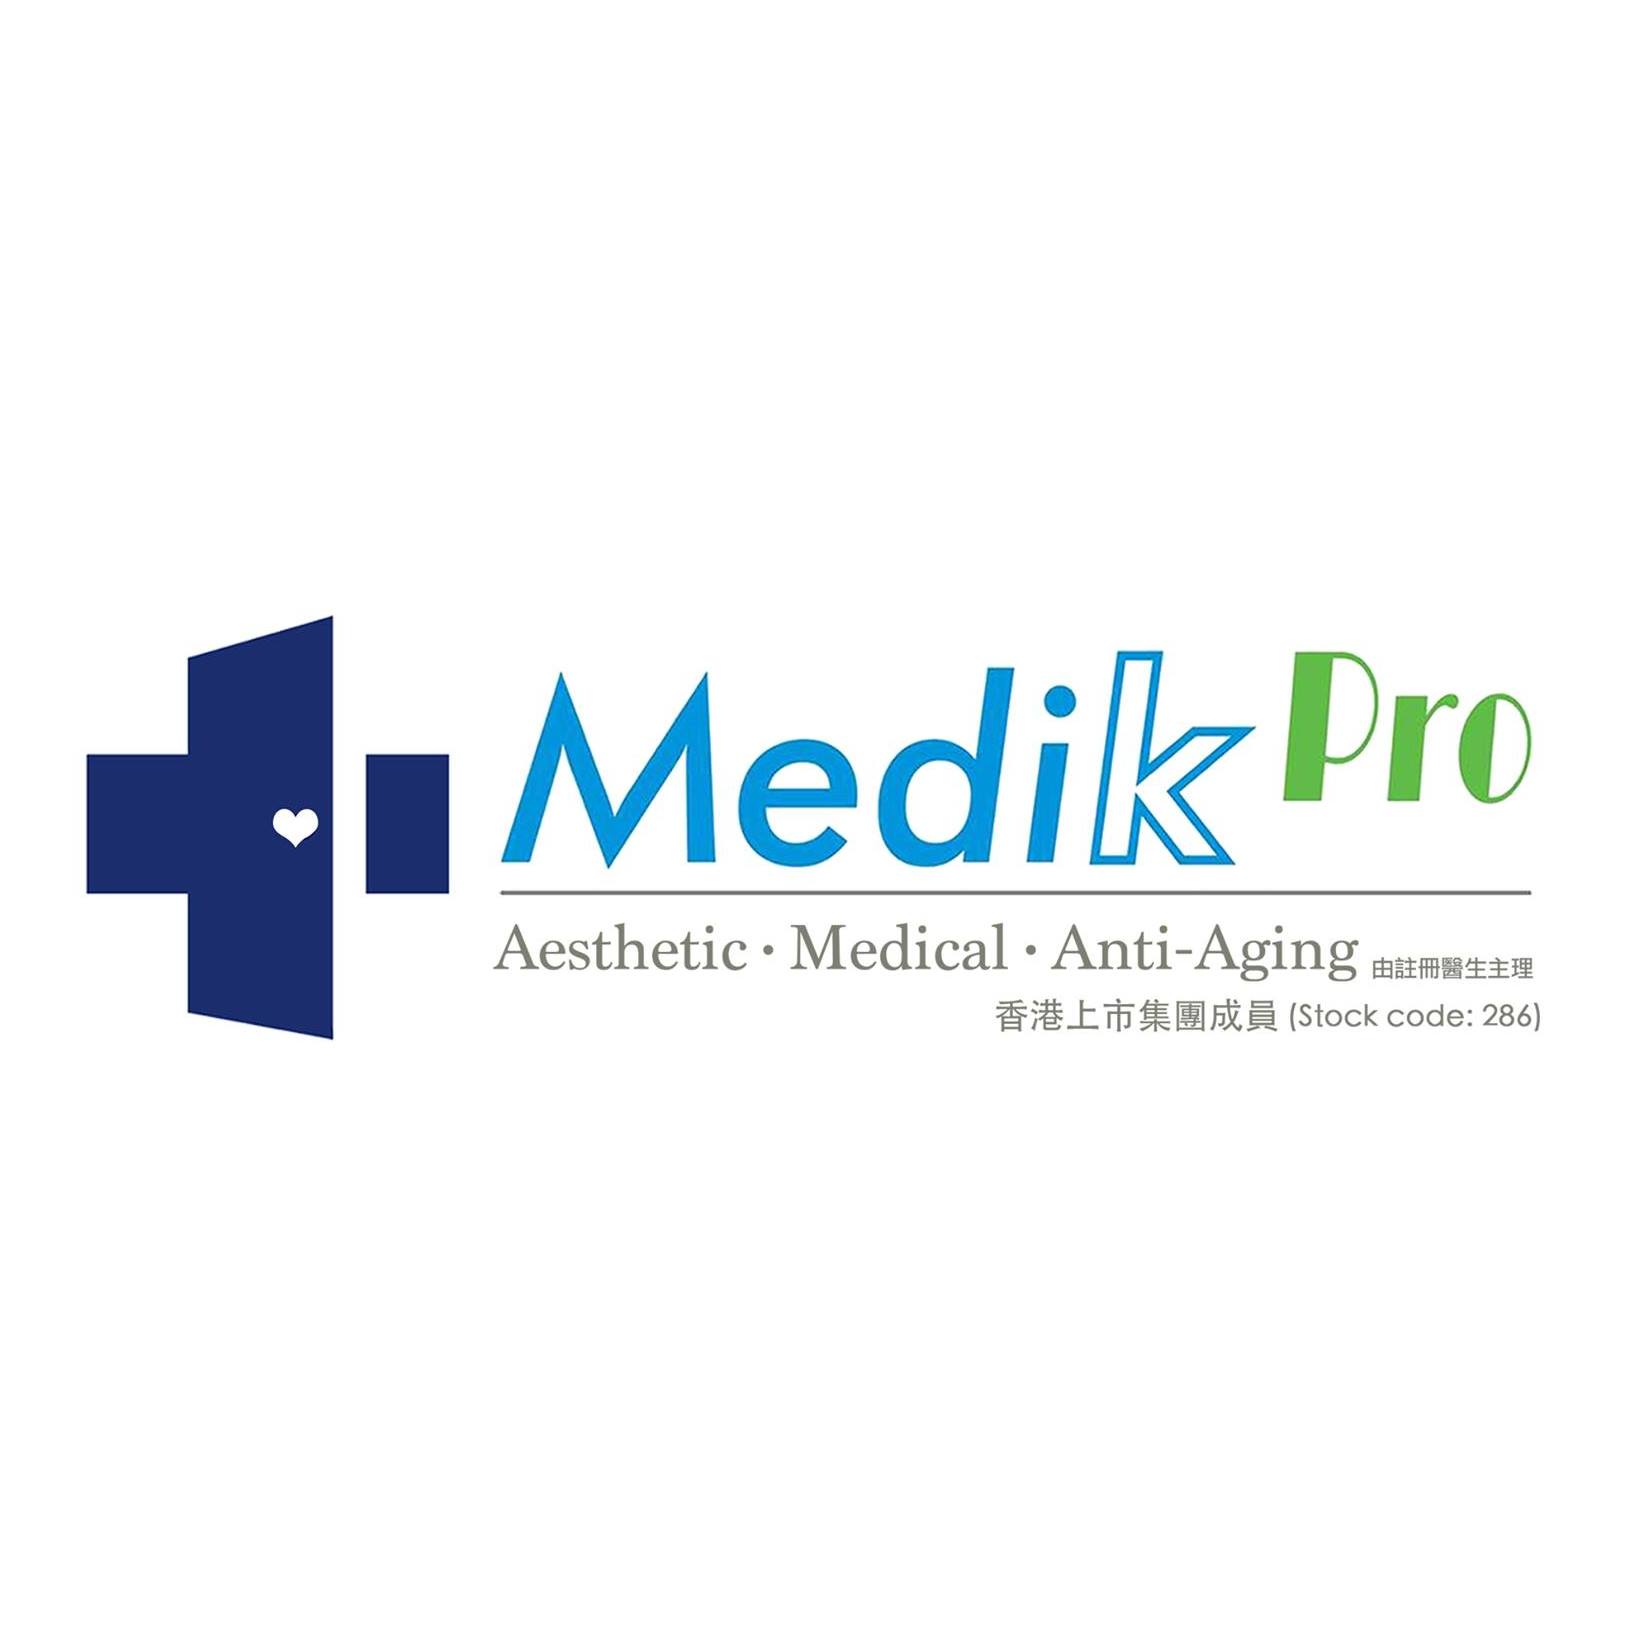 醫學美容: Medik Pro (佐敦分店)